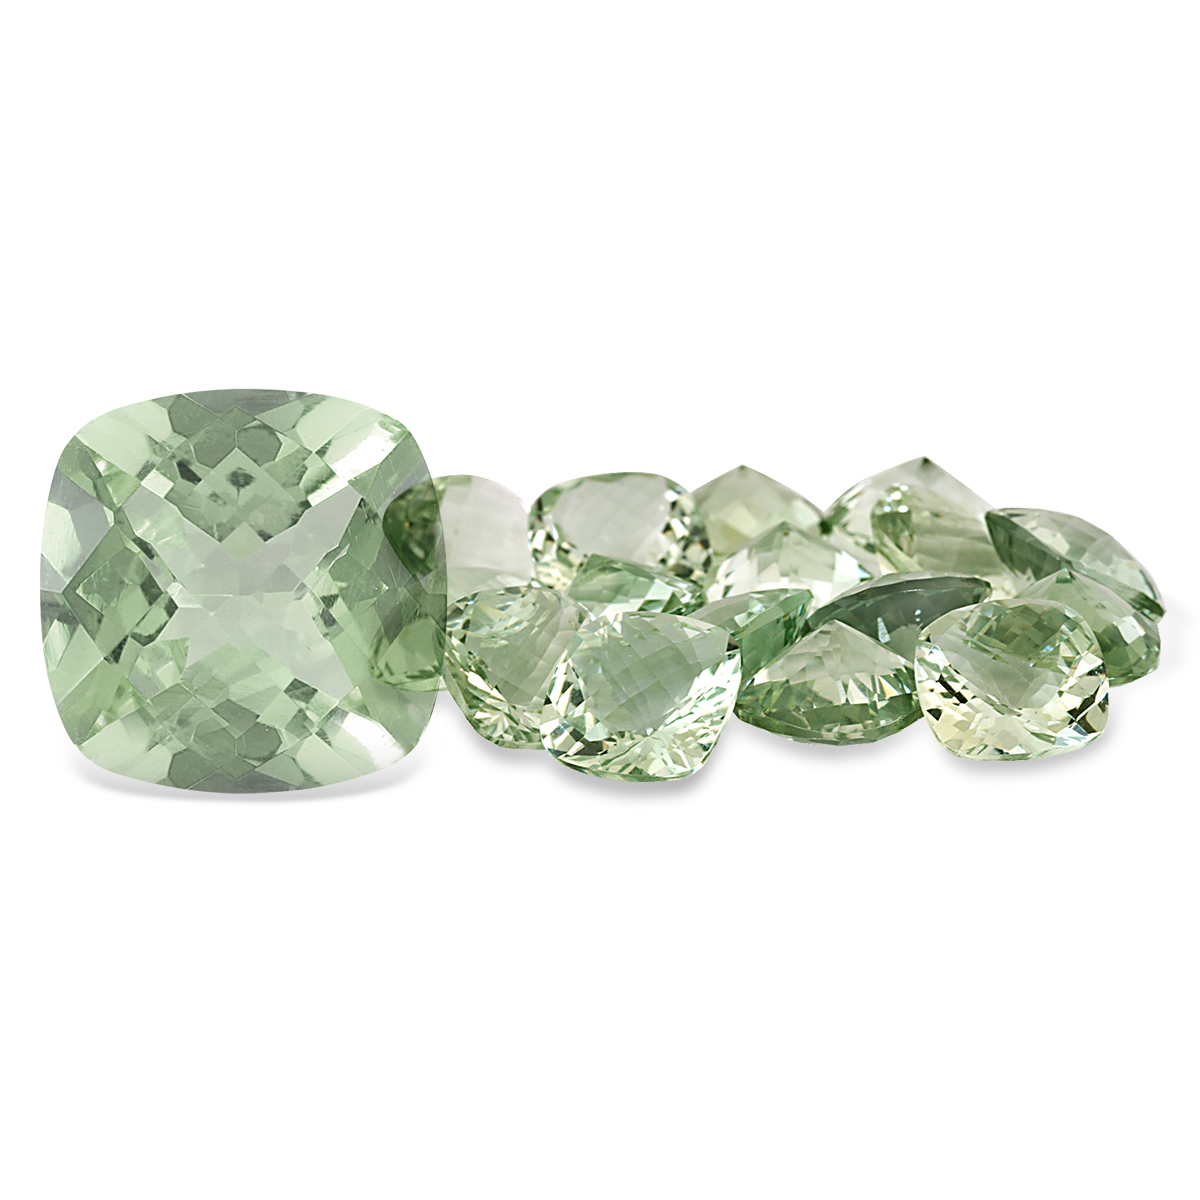 8 Carat Cushion Cut Green Amethyst Gemstone